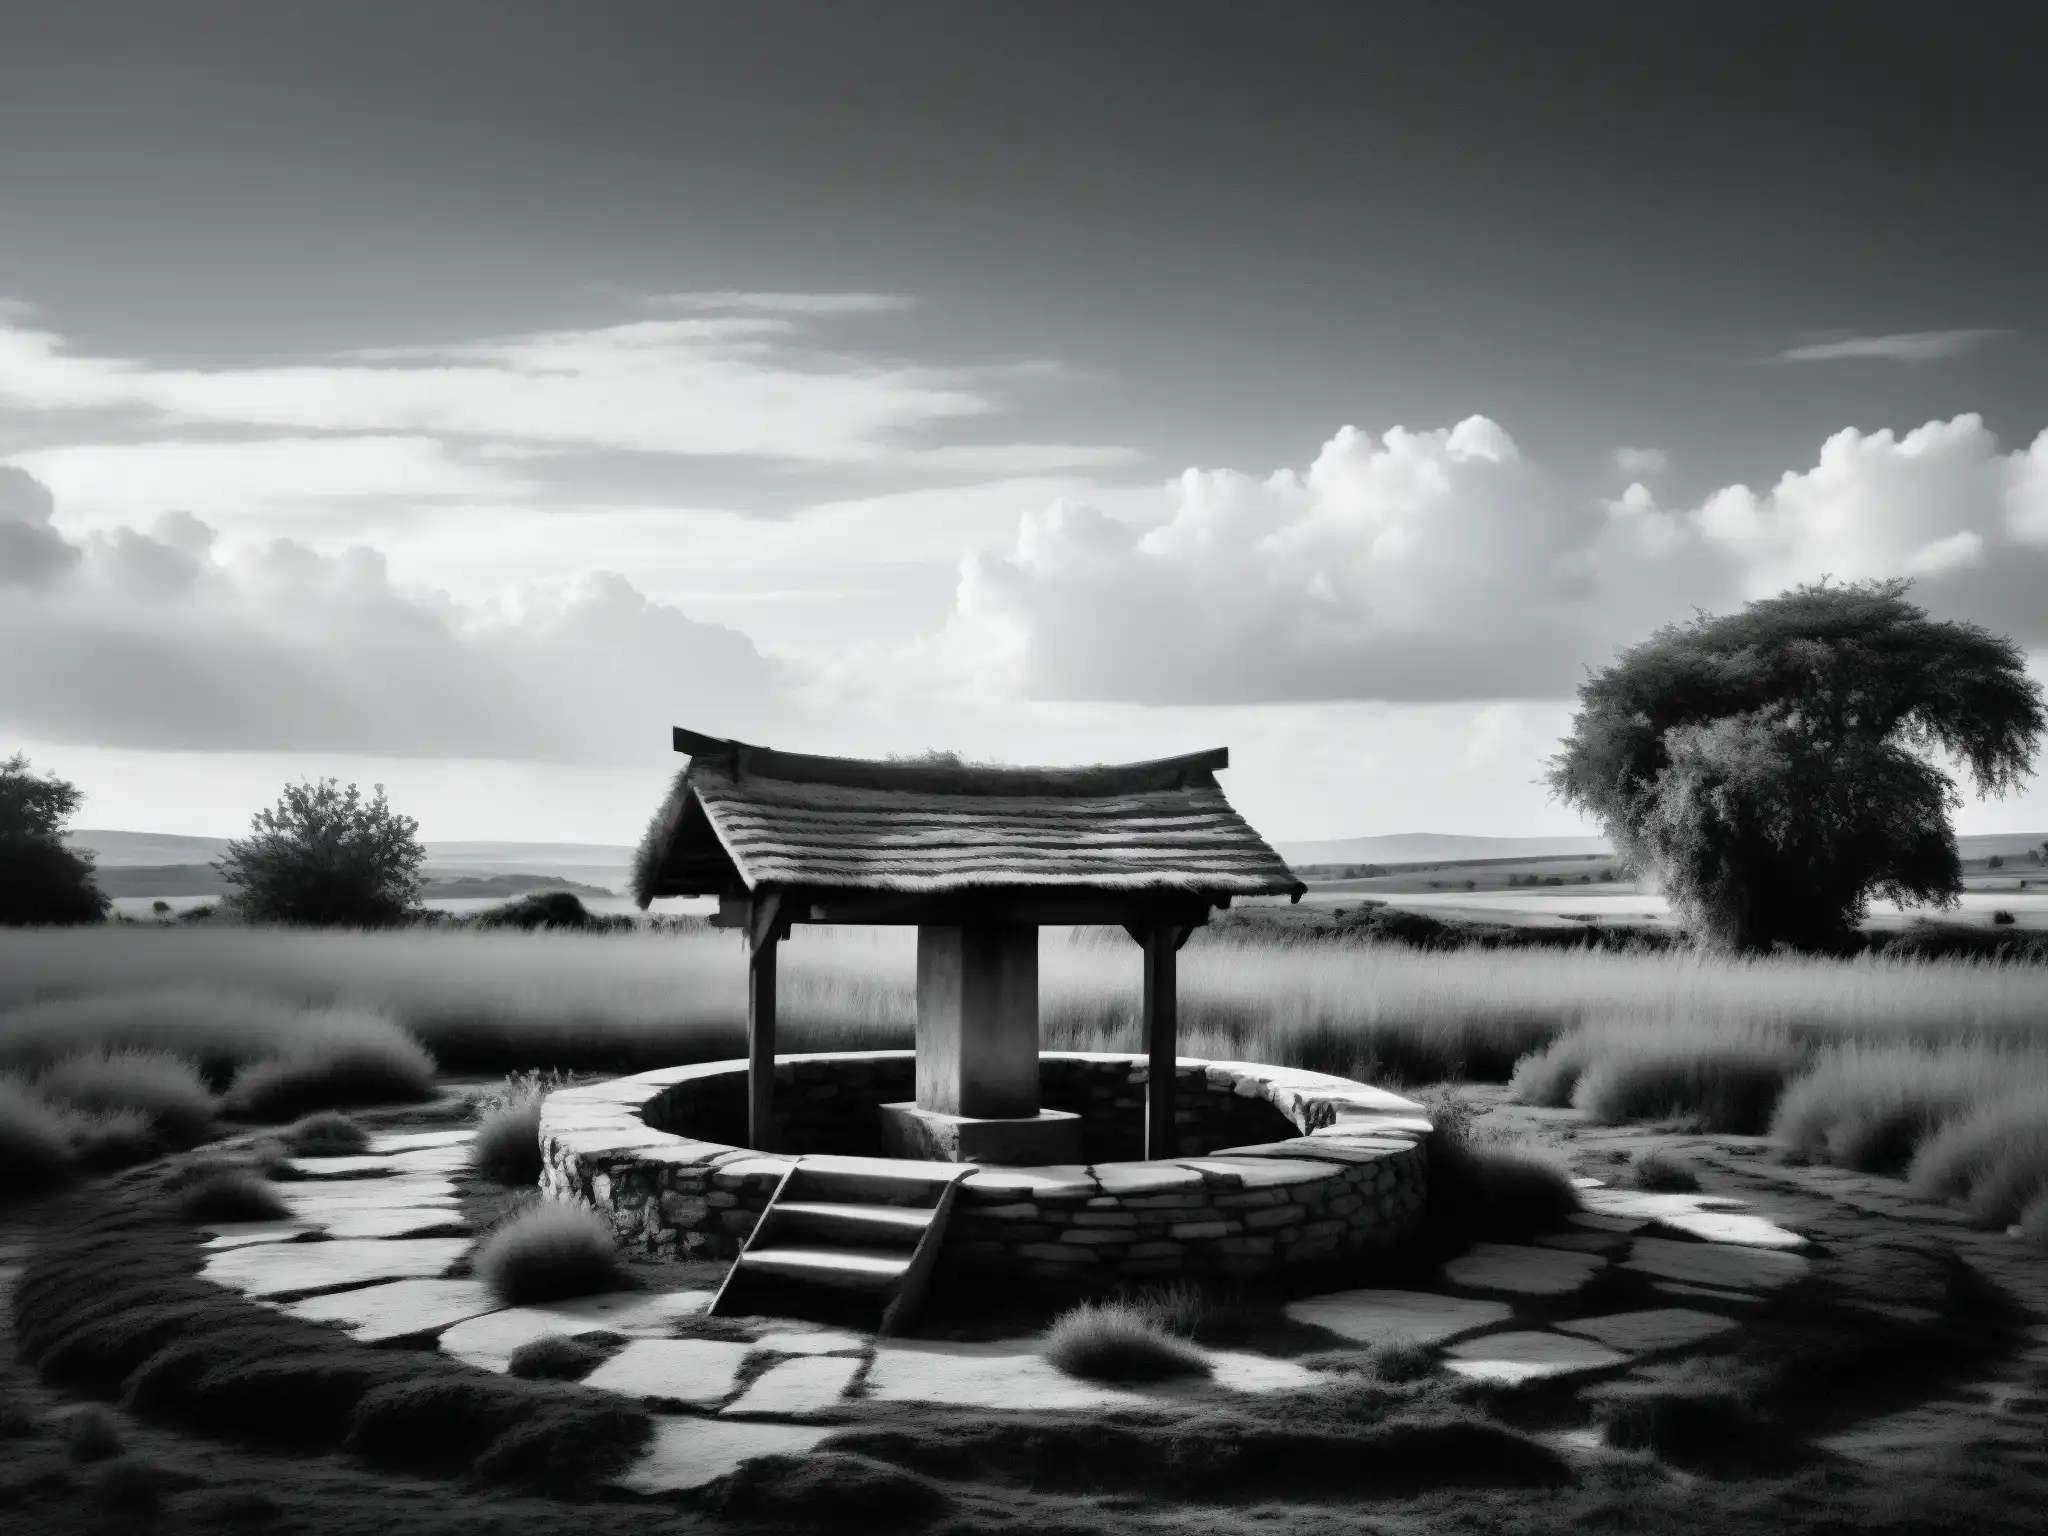 Una foto en blanco y negro de un paisaje rural desolado con un pozo de piedra solitario y vegetación desbordante